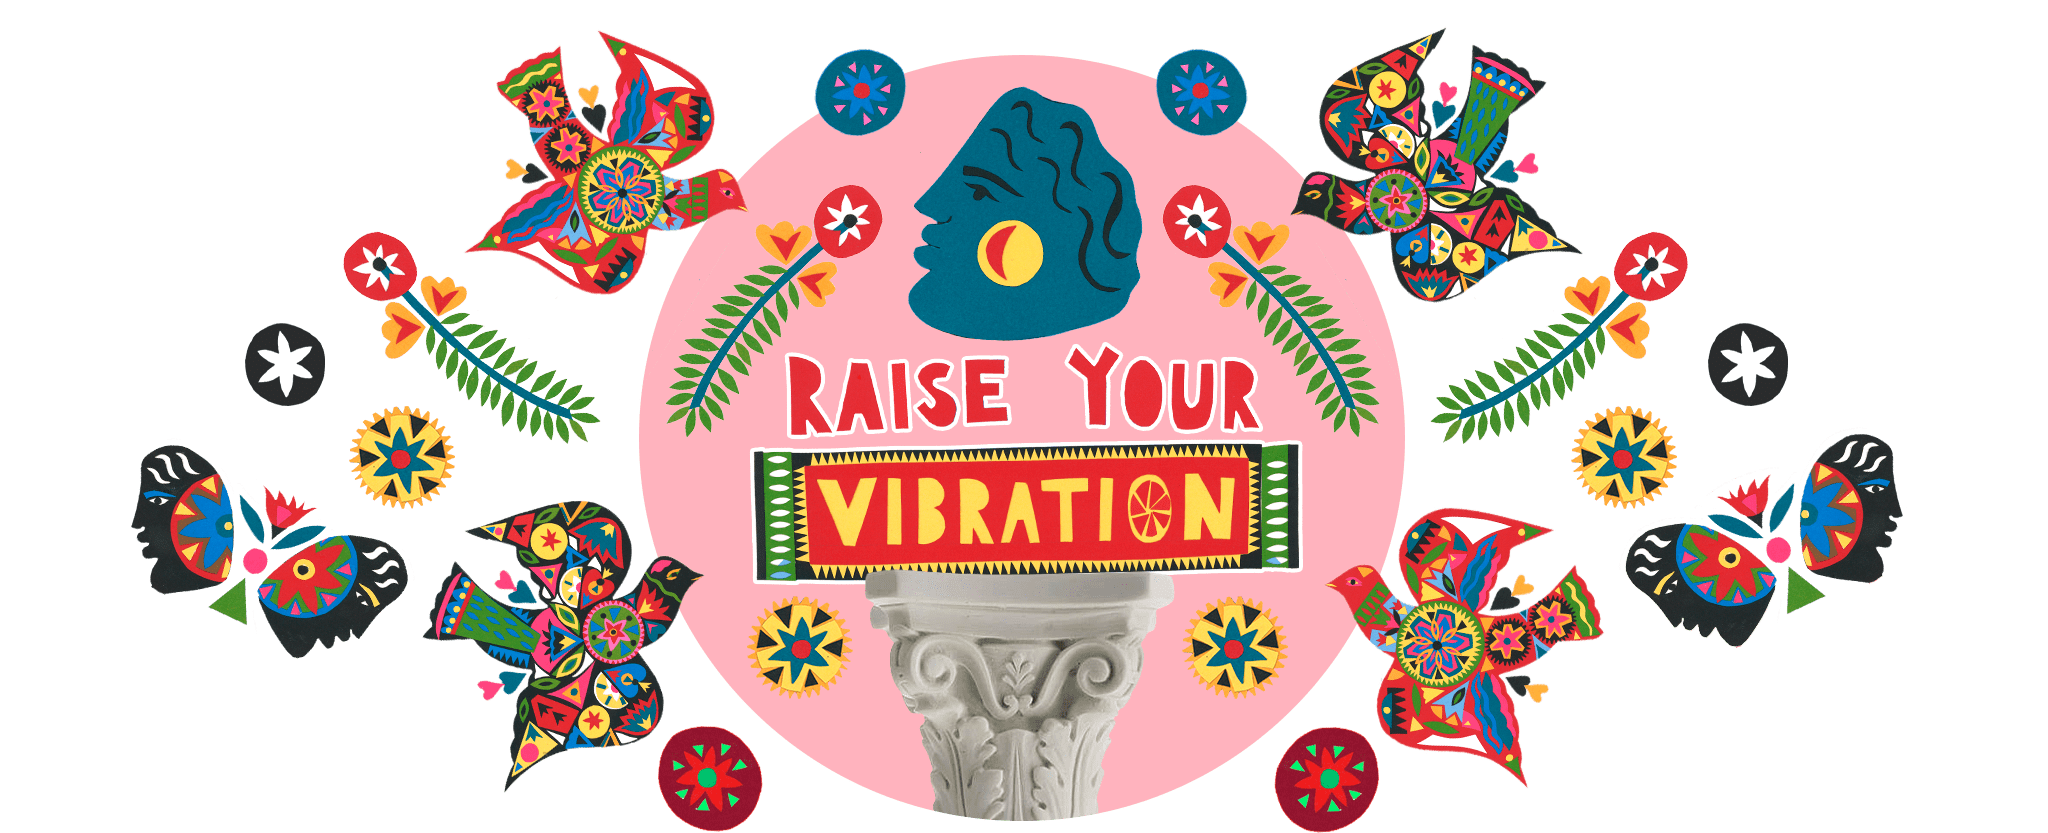 Raise Your Vibration Main Image